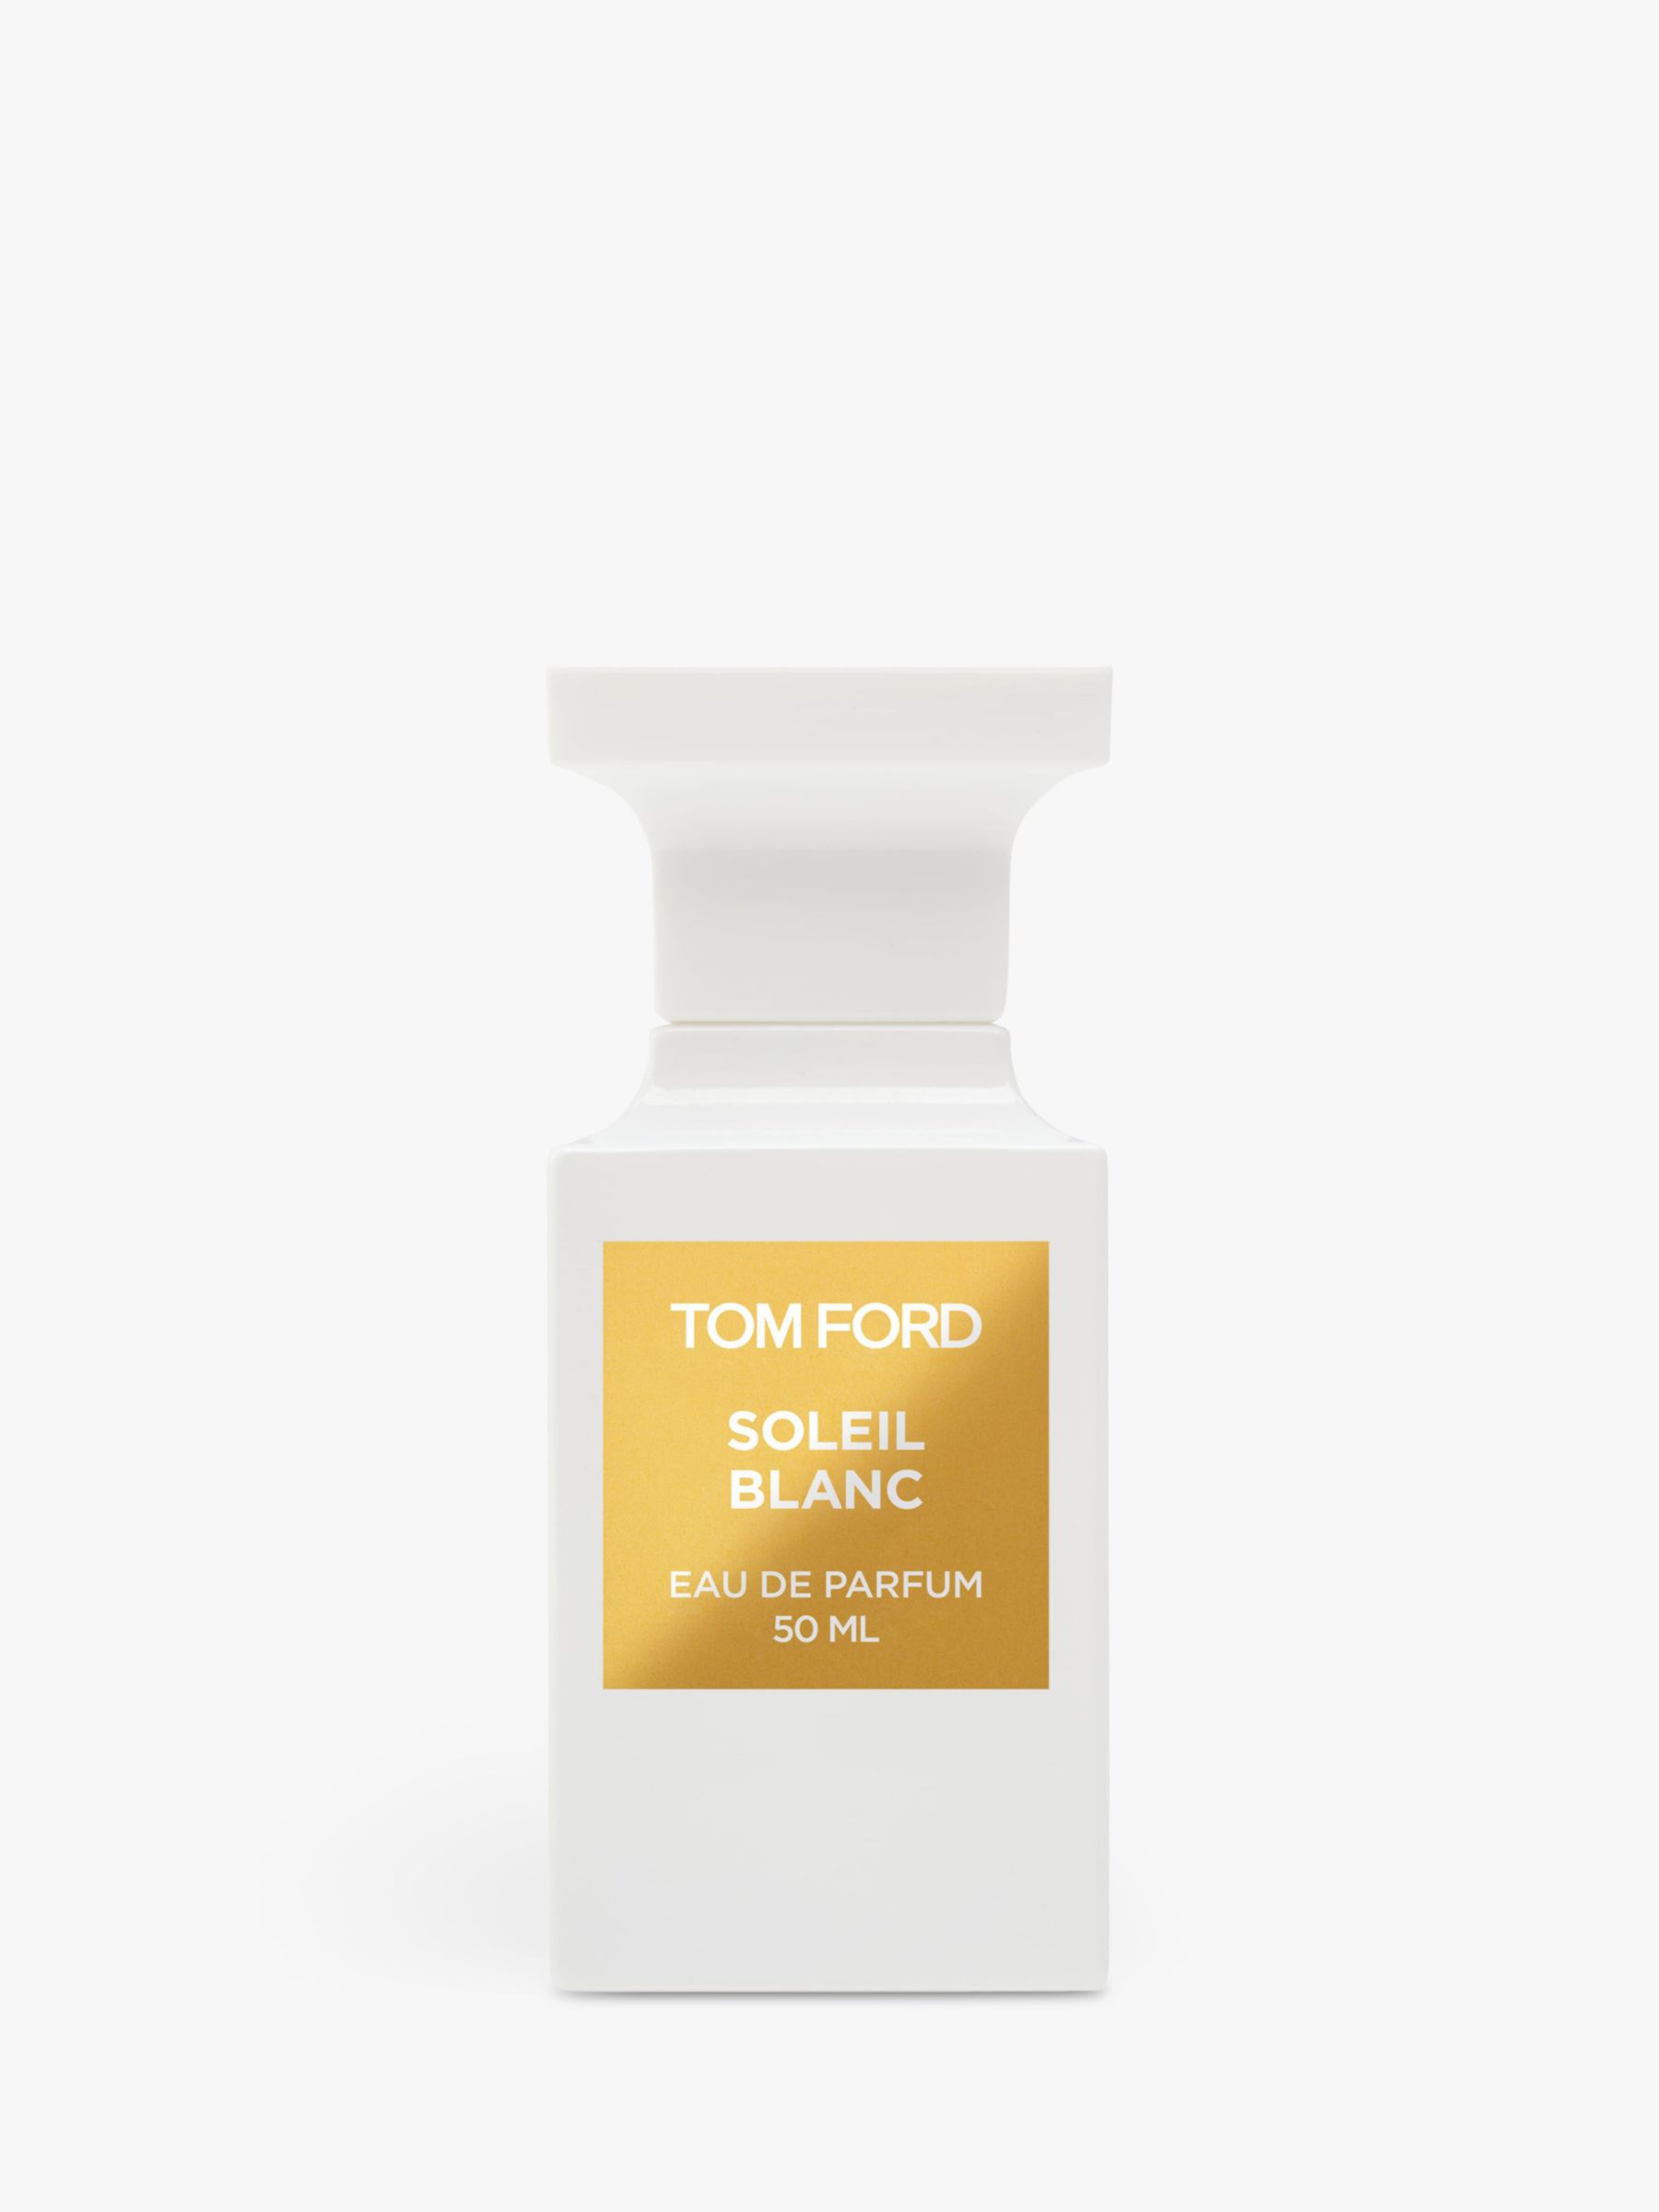 TOM FORD Private Blend Soleil Blanc Eau de Parfum, 50ml 1